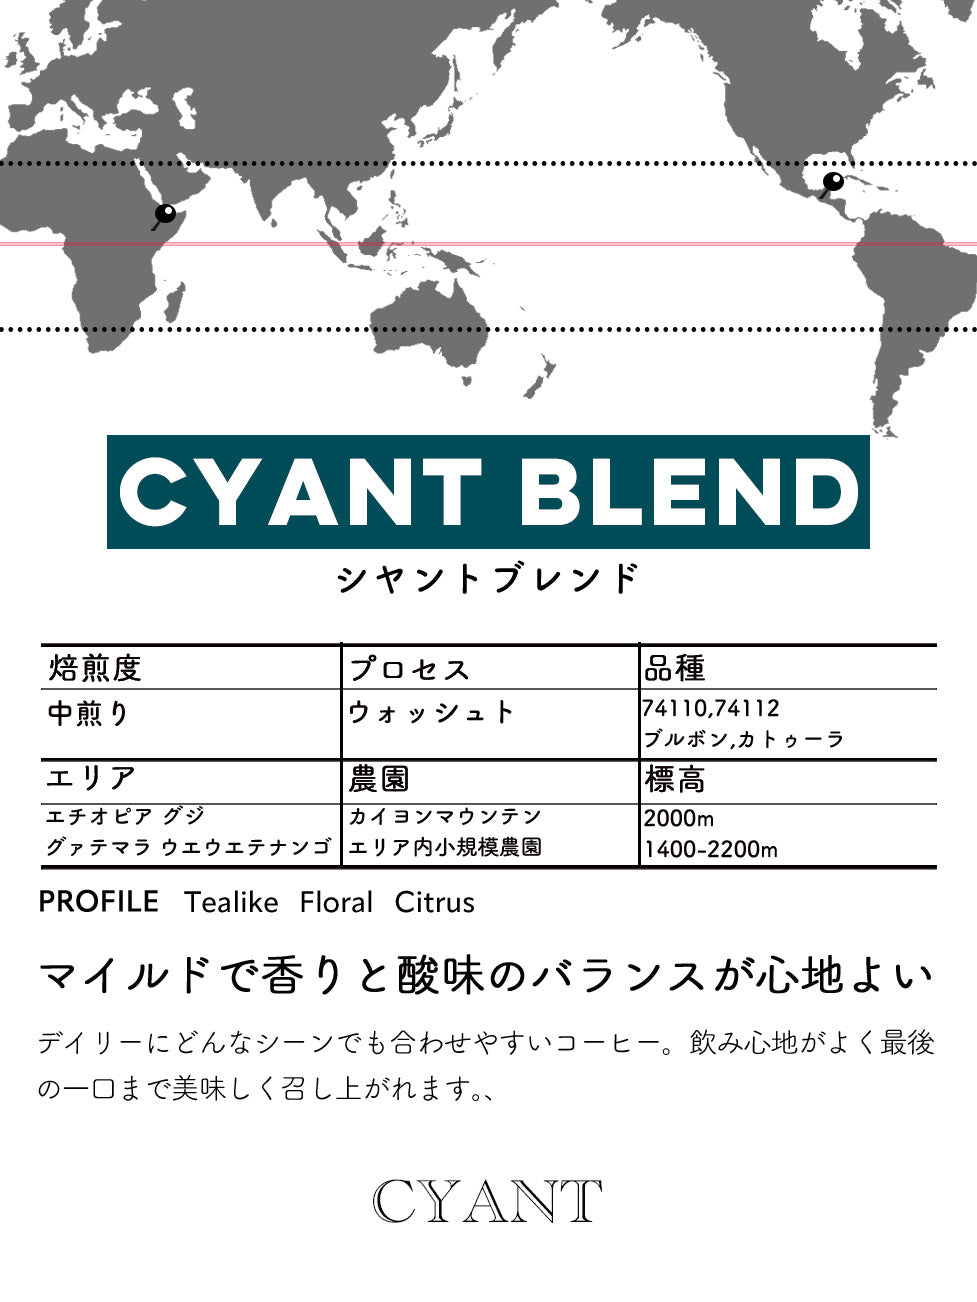 CYANT BLEND COFFEE 100g/200g/400g